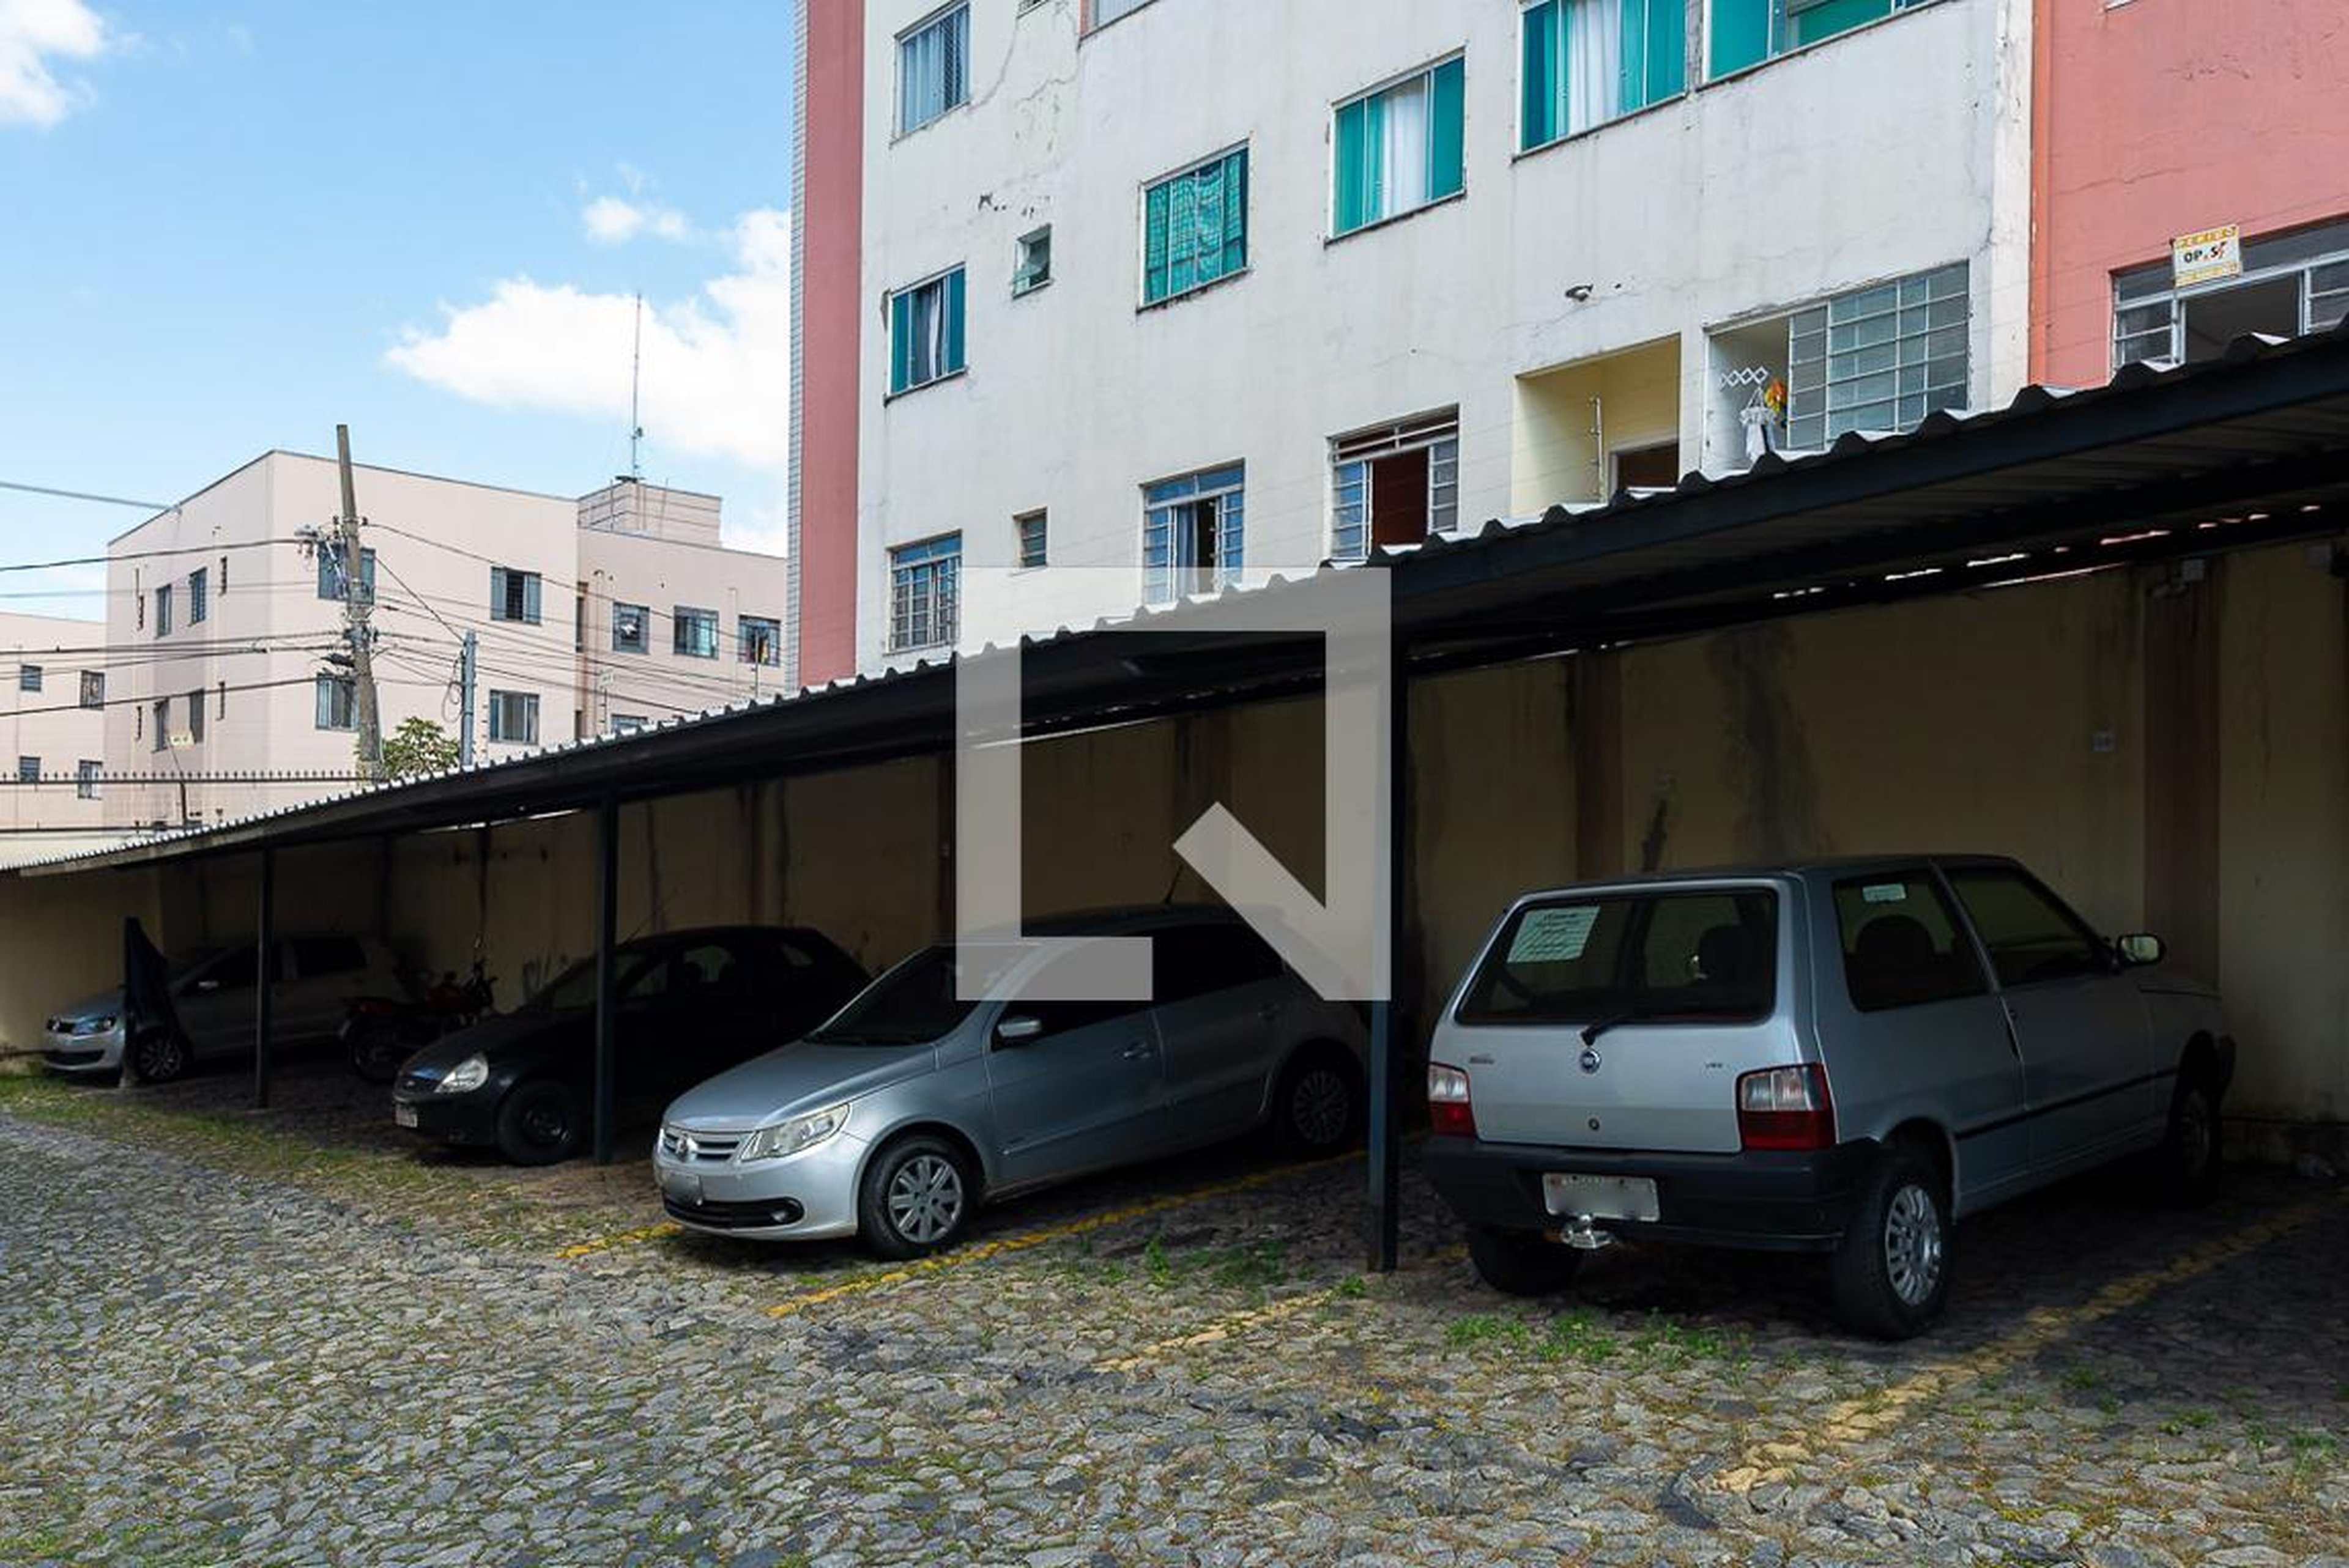 Estacionamento - Residencial Itaborai